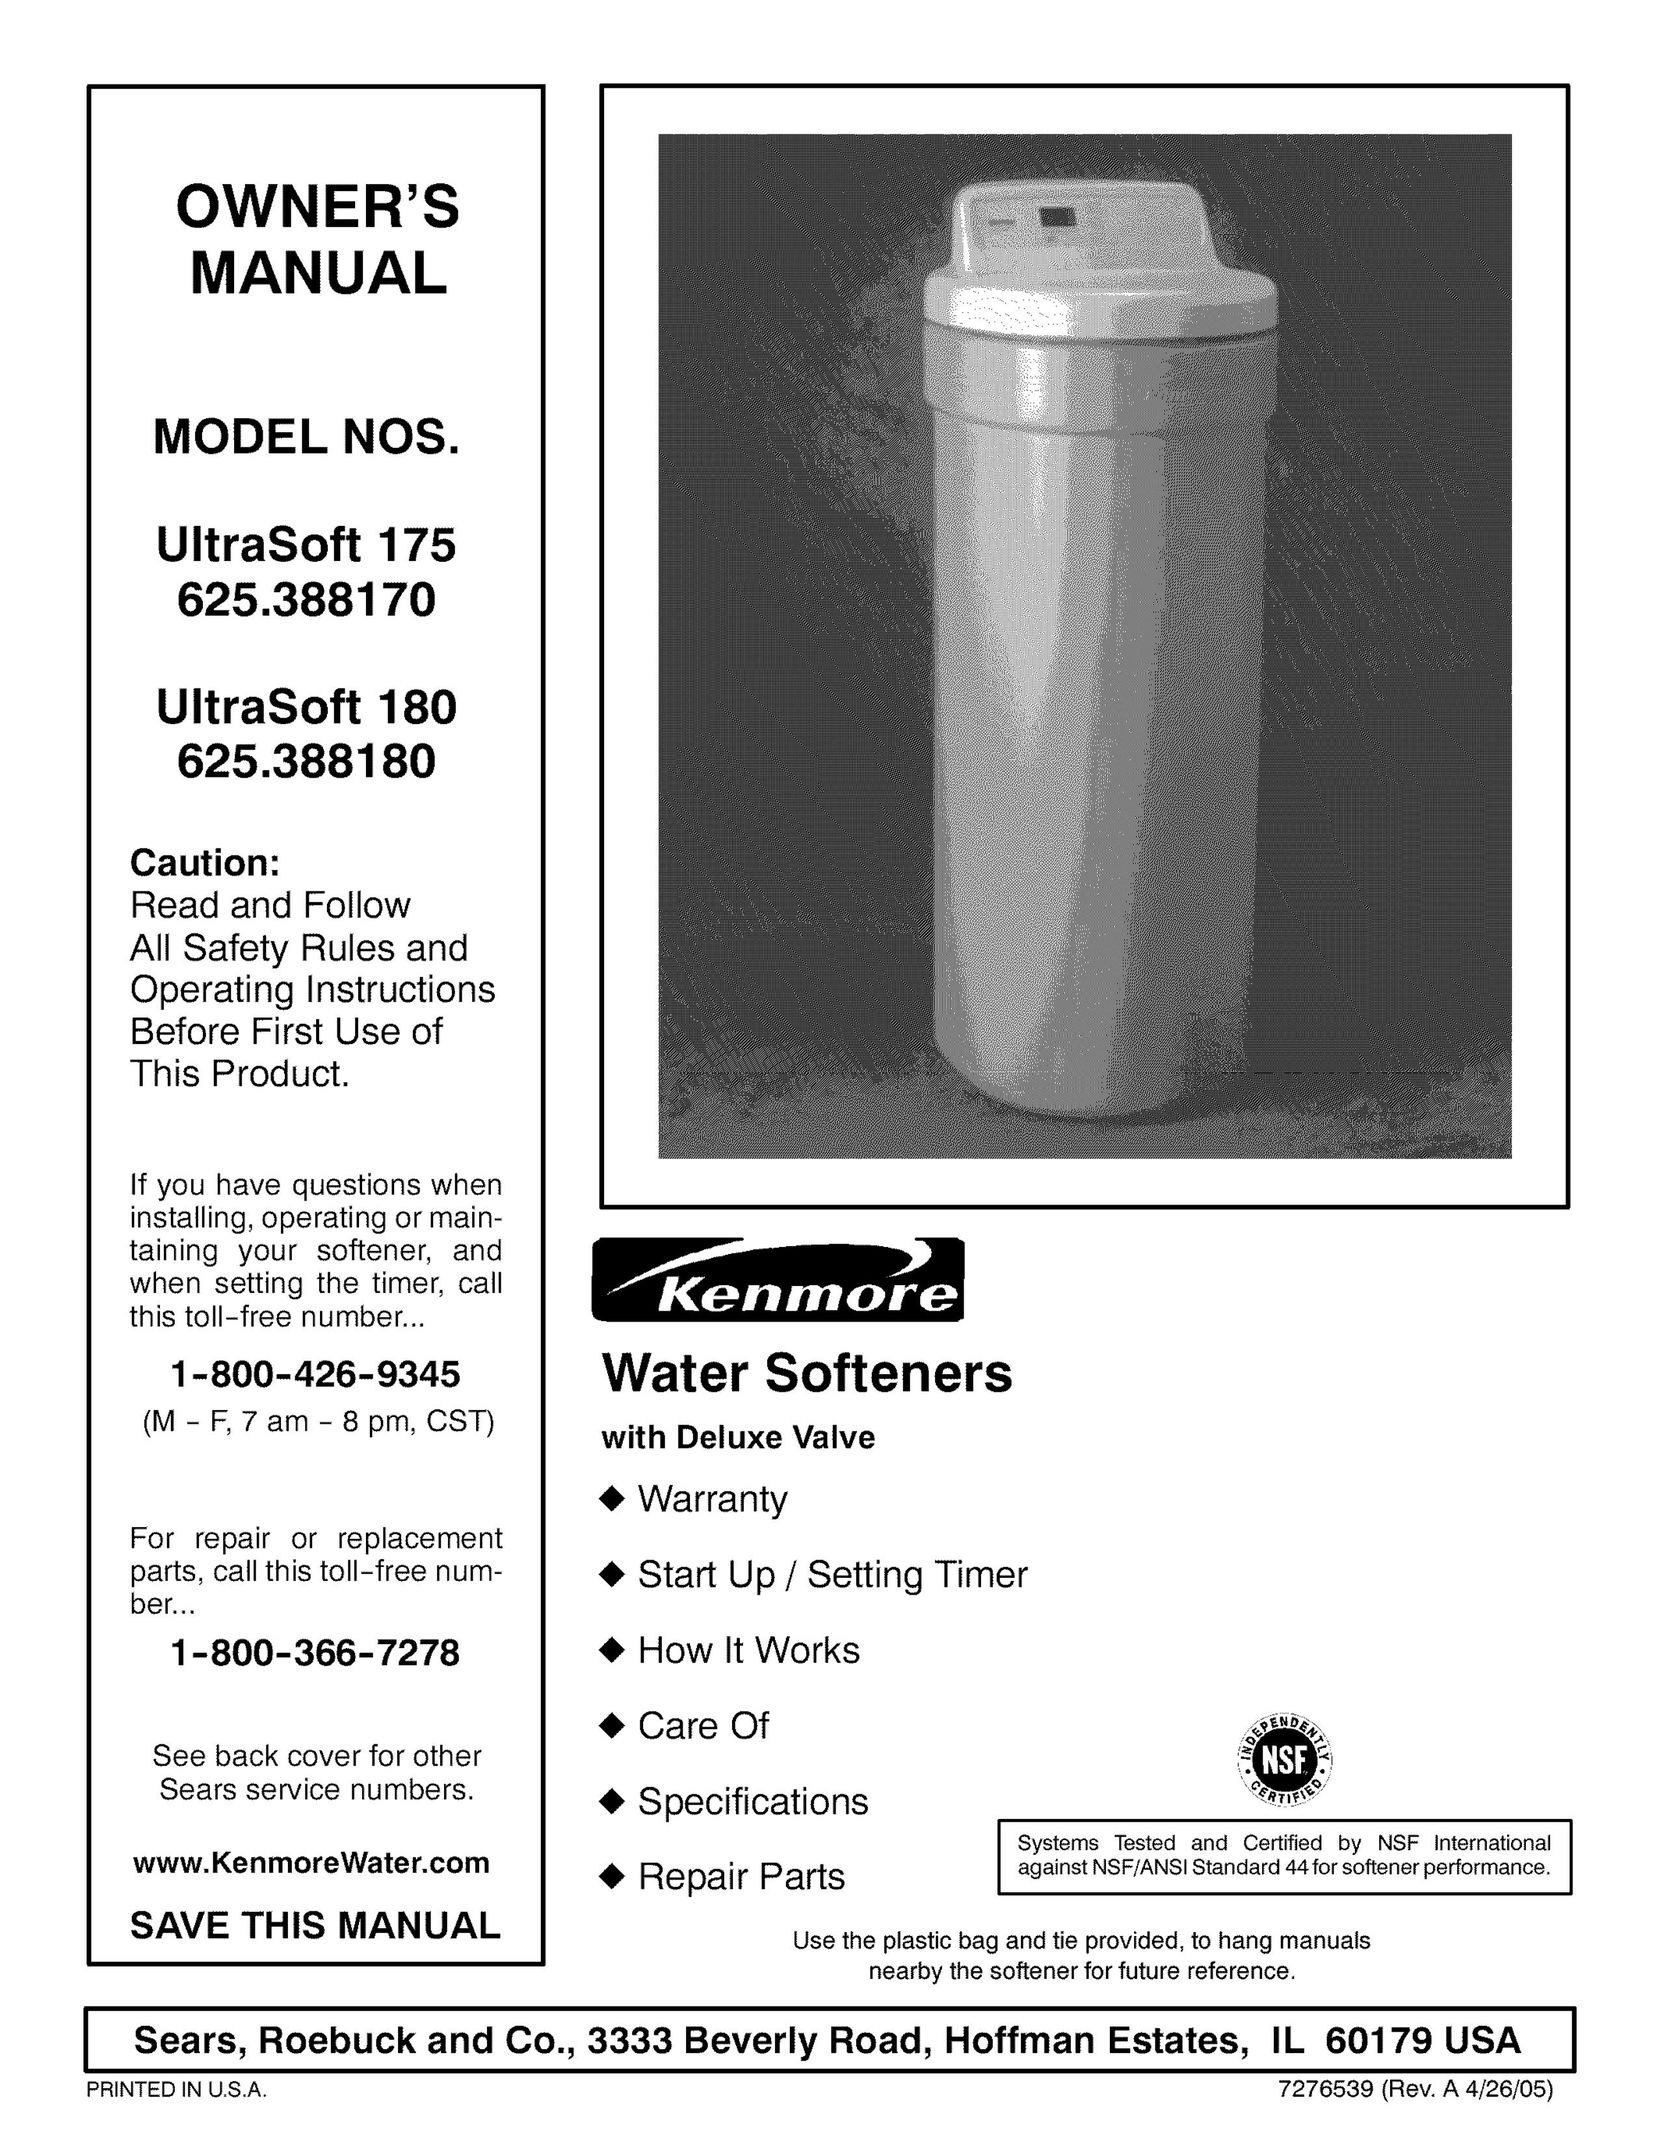 Kenmore 625.38818 Water System User Manual